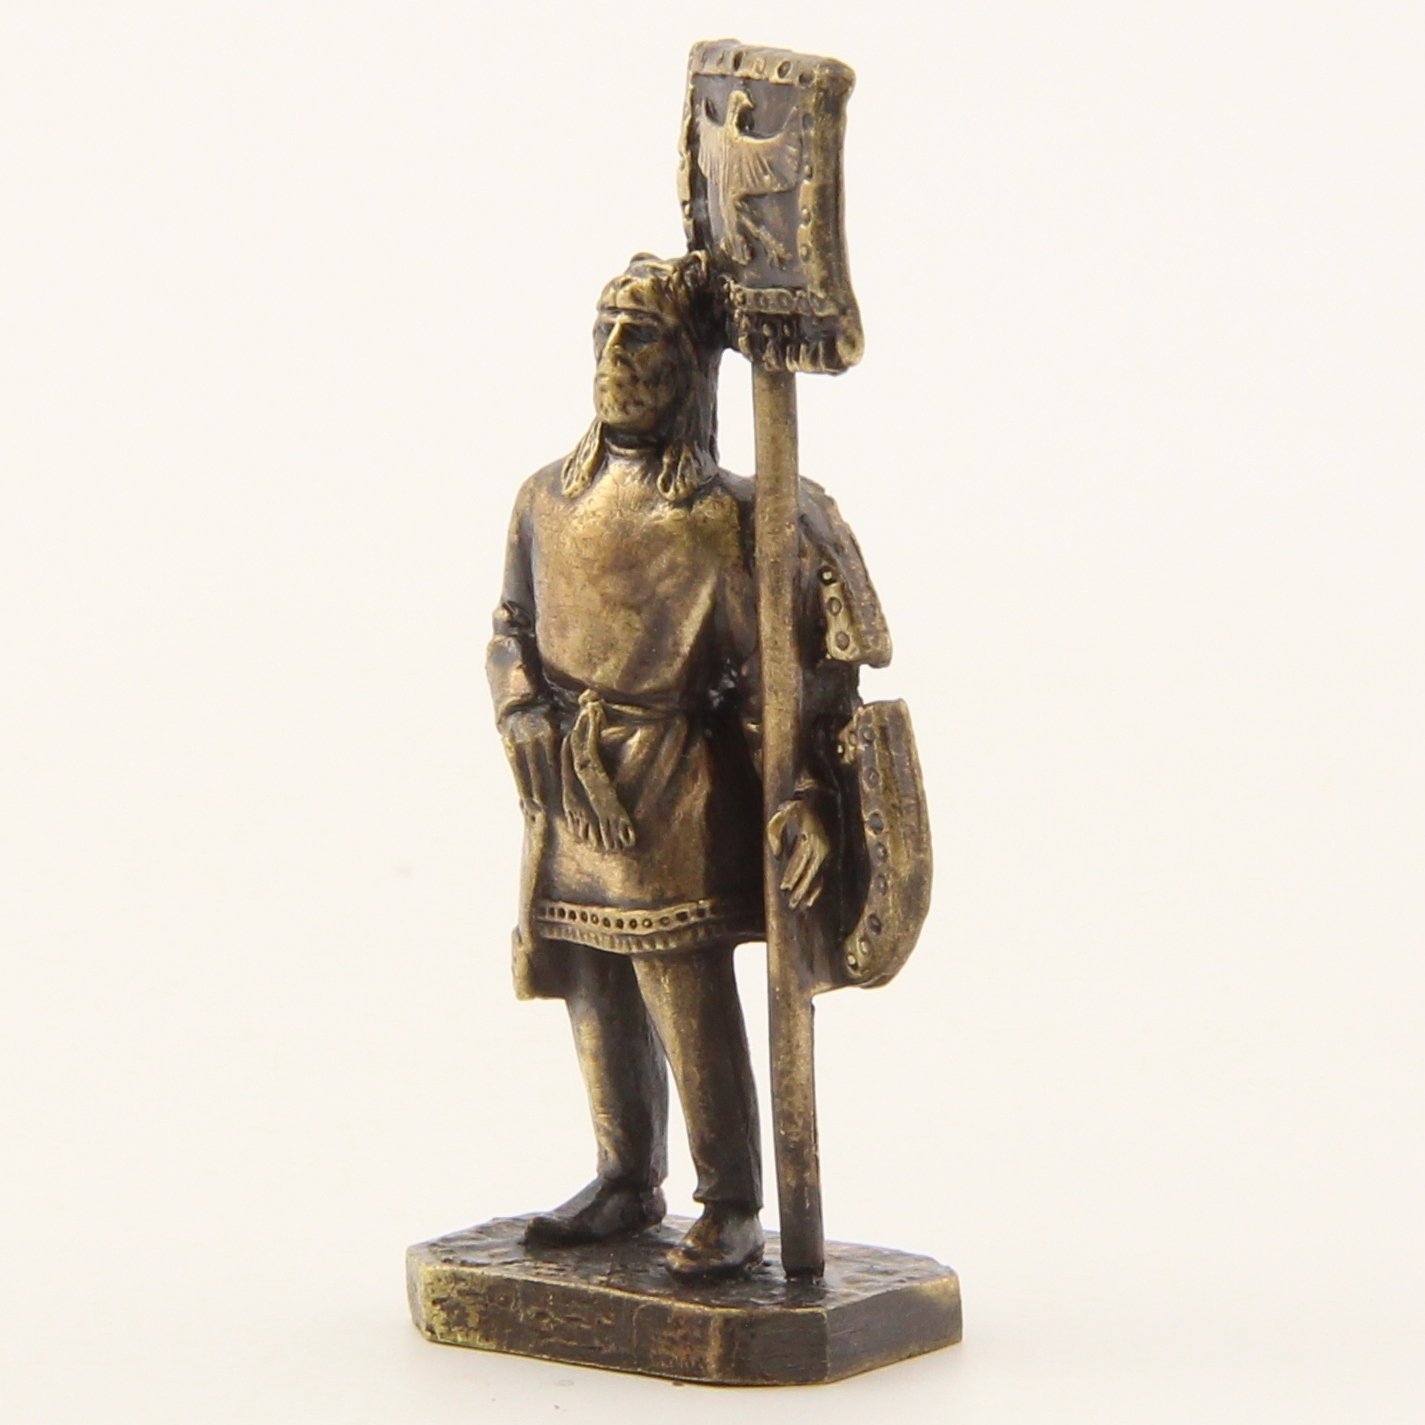 Бронзовая статуэтка Знаменосец с орлом на штандарте (серия Персы)